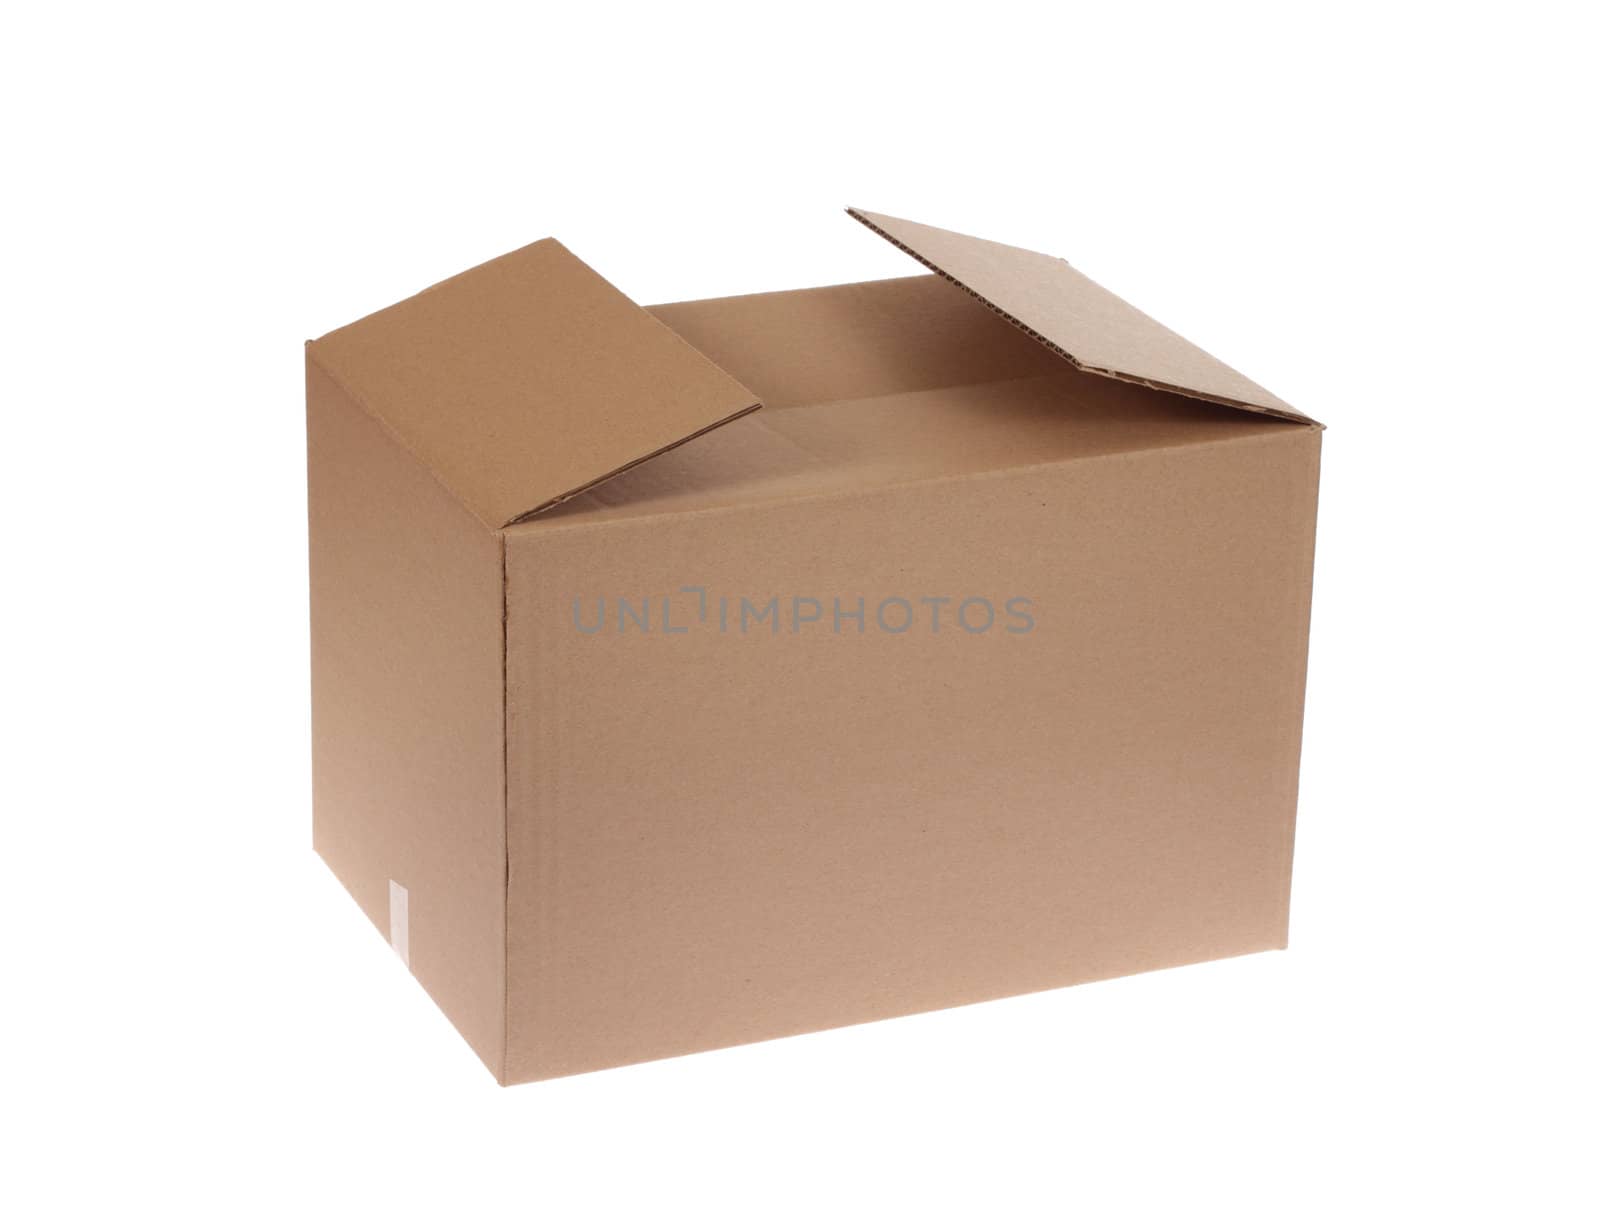 cardboard box by aguirre_mar